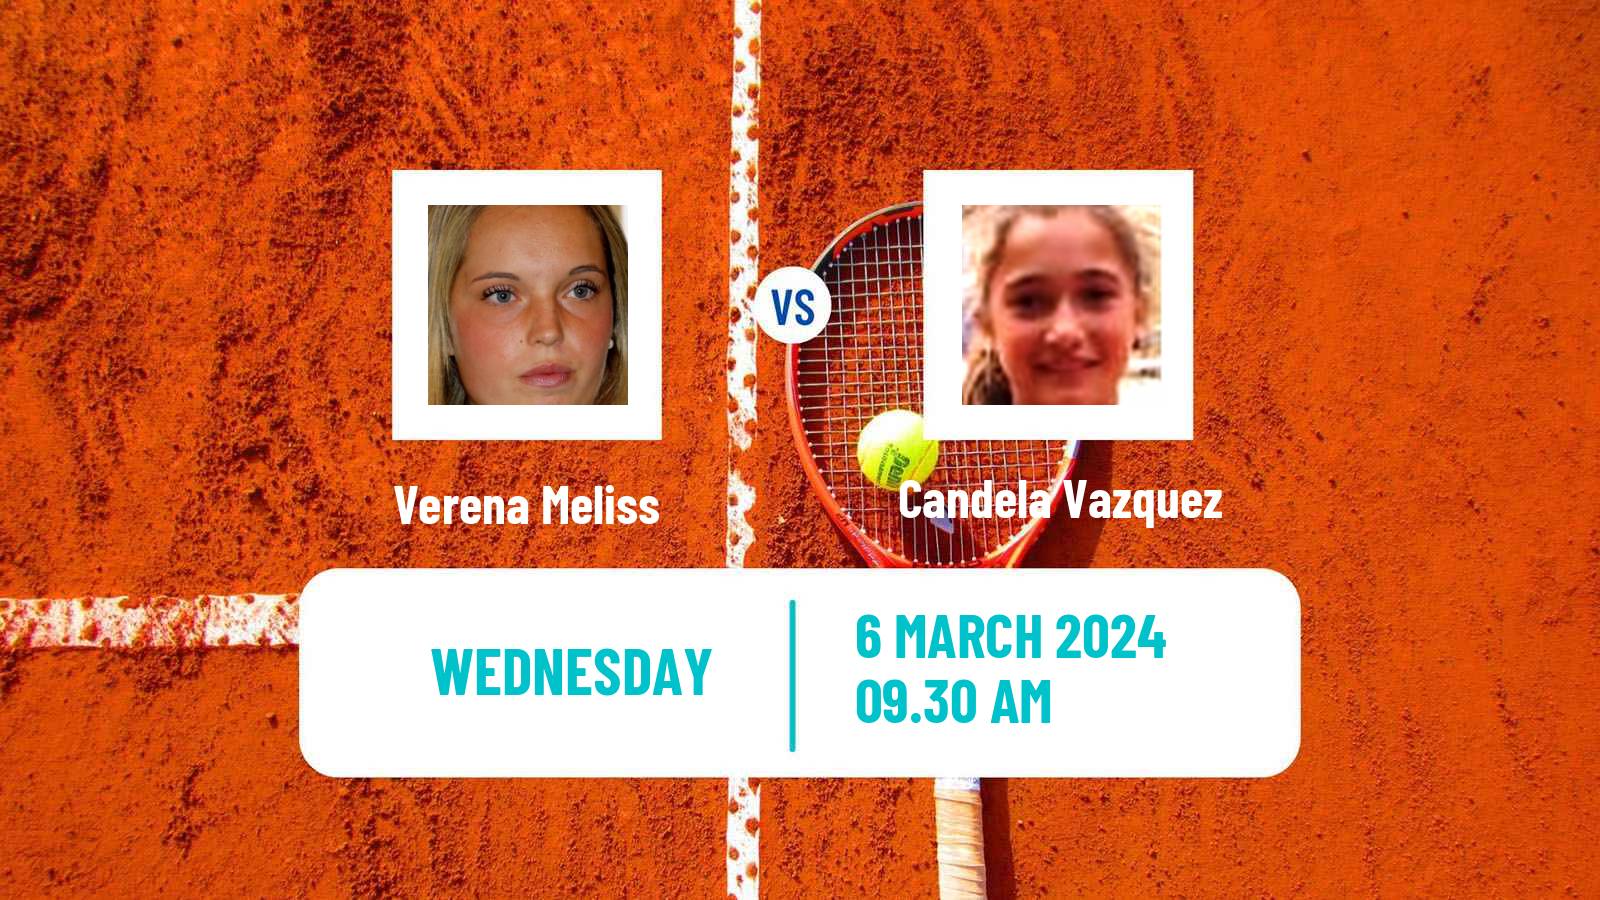 Tennis ITF W15 Cordoba Women Verena Meliss - Candela Vazquez